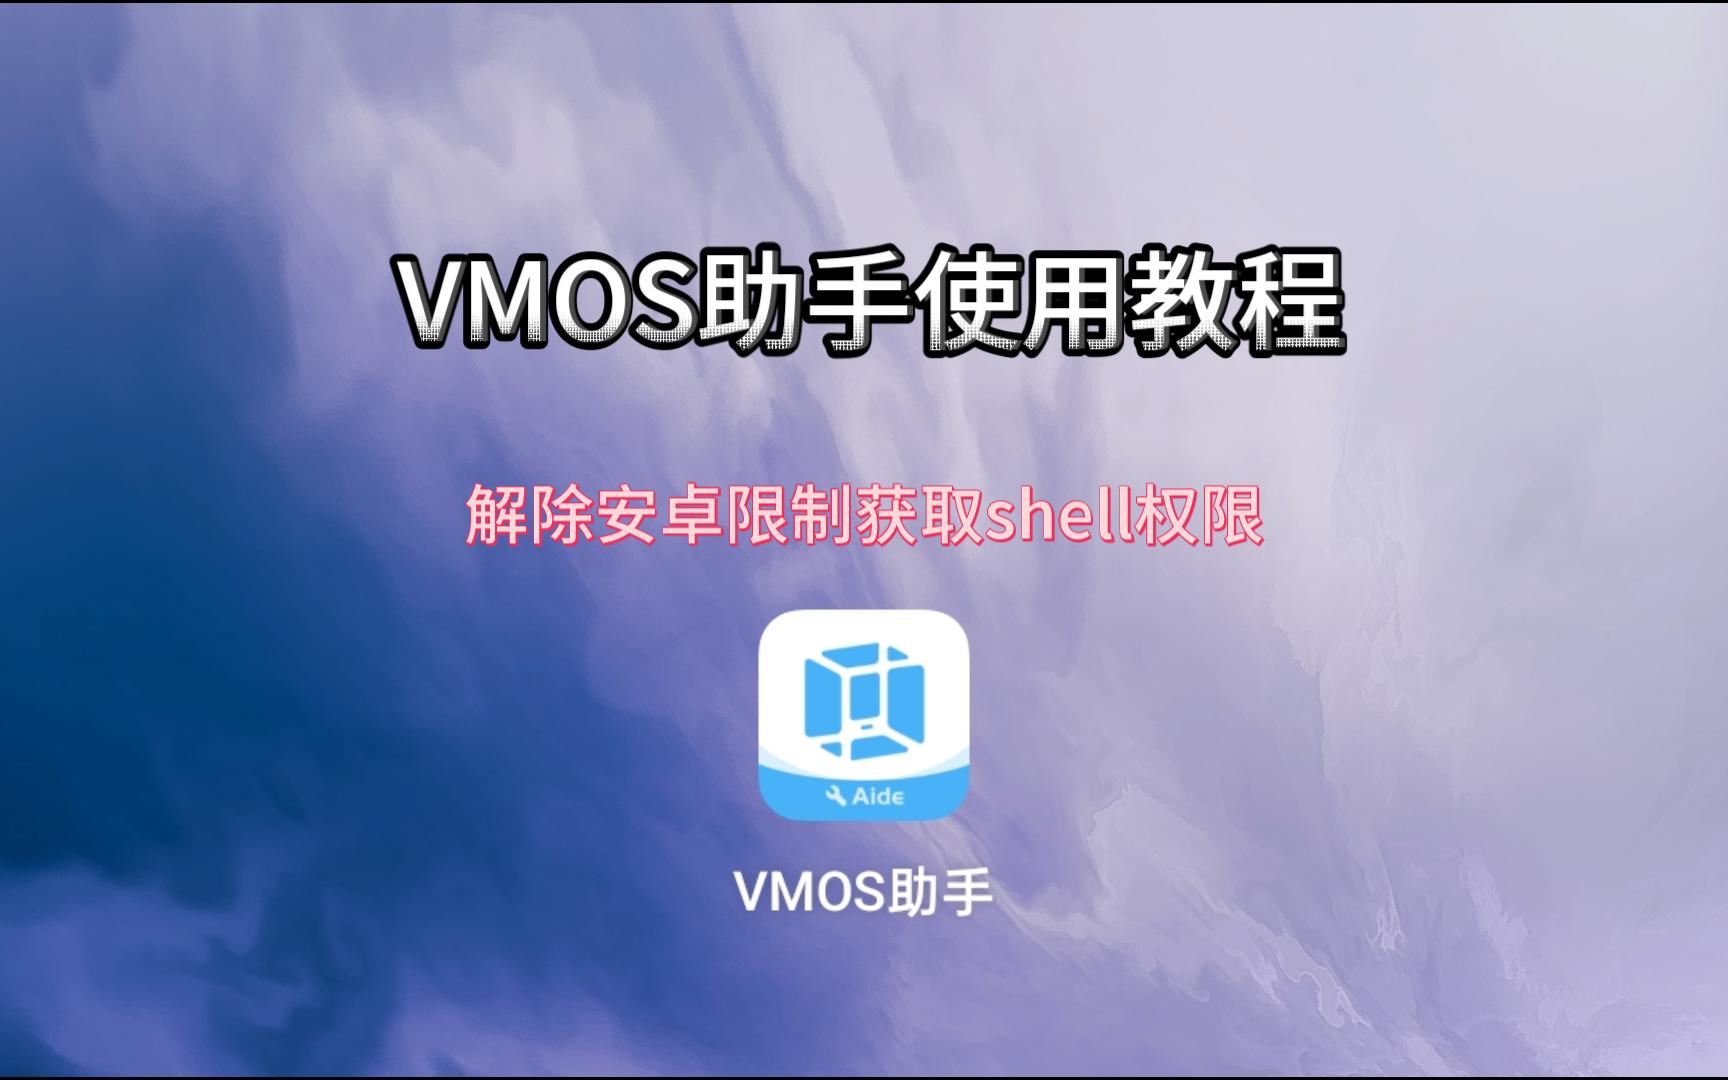 VMOS助手解除安卓12以上系统限制，来获取shell权限完美运行虚拟机教程